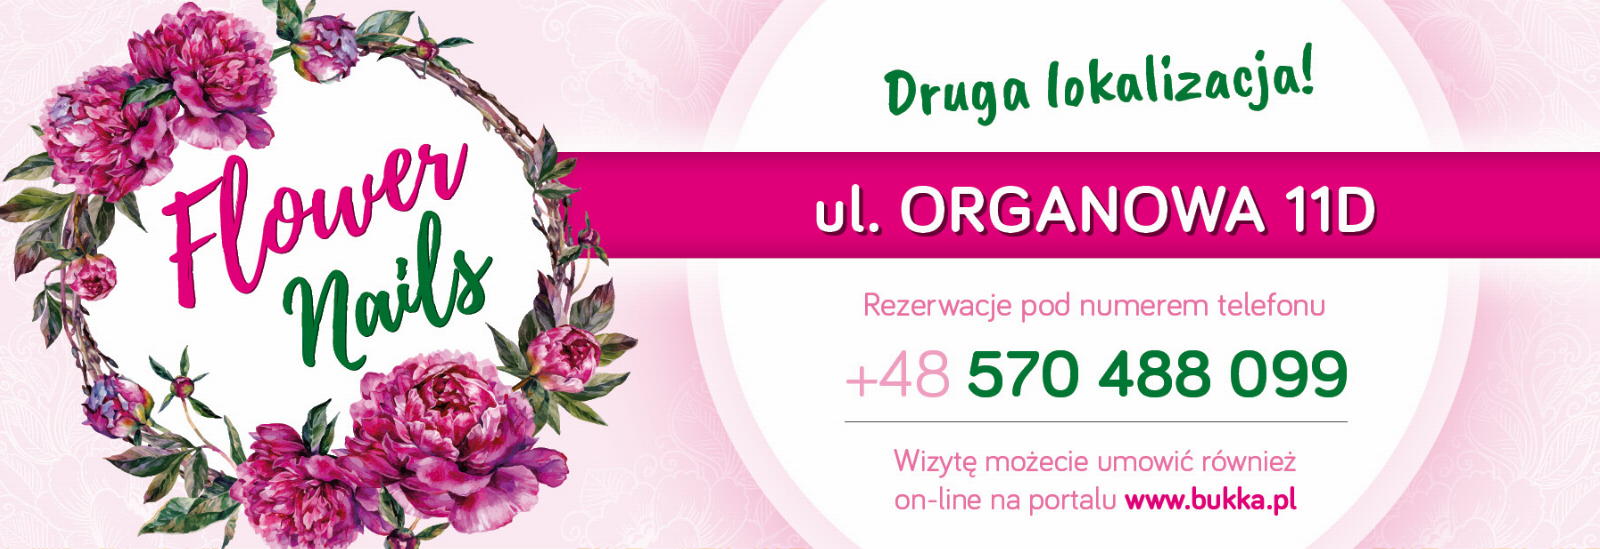 FLOWER NAILS ul. Organowa, Lublin, 316095618-666236011574696-1273105800833894093-n